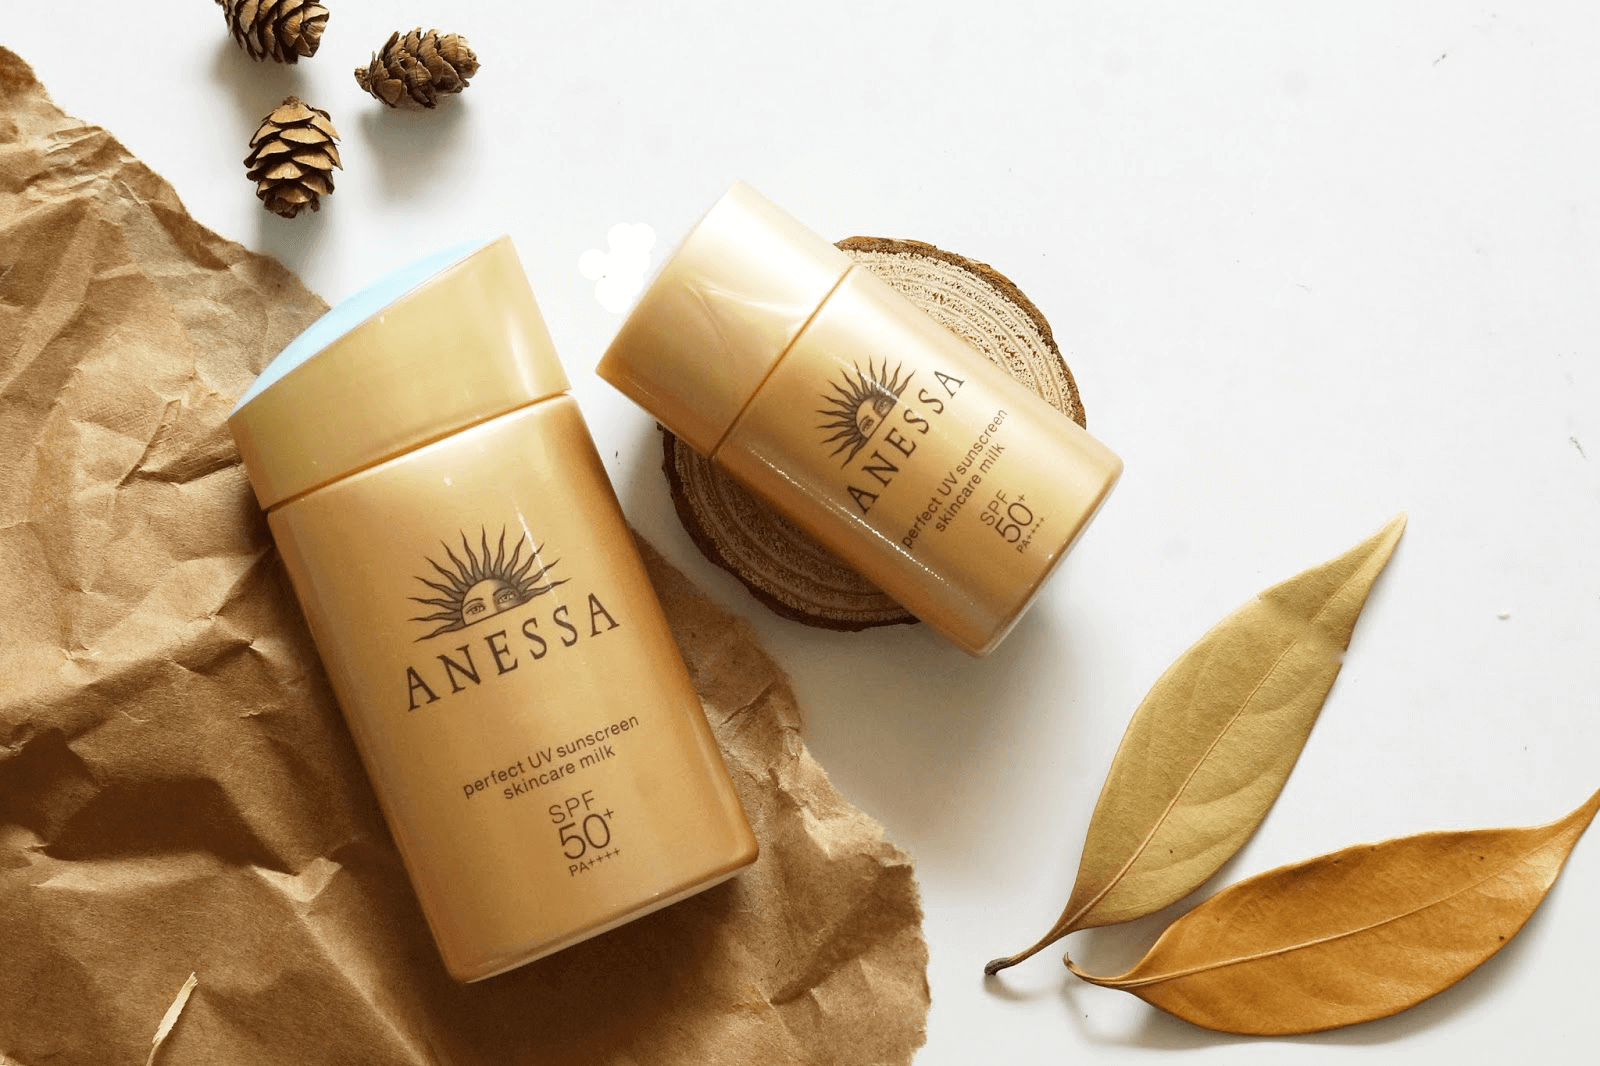 Anessa là một thương hiệu mỹ phẩm có tuổi đời 100 năm đến từ Nhật Bản.